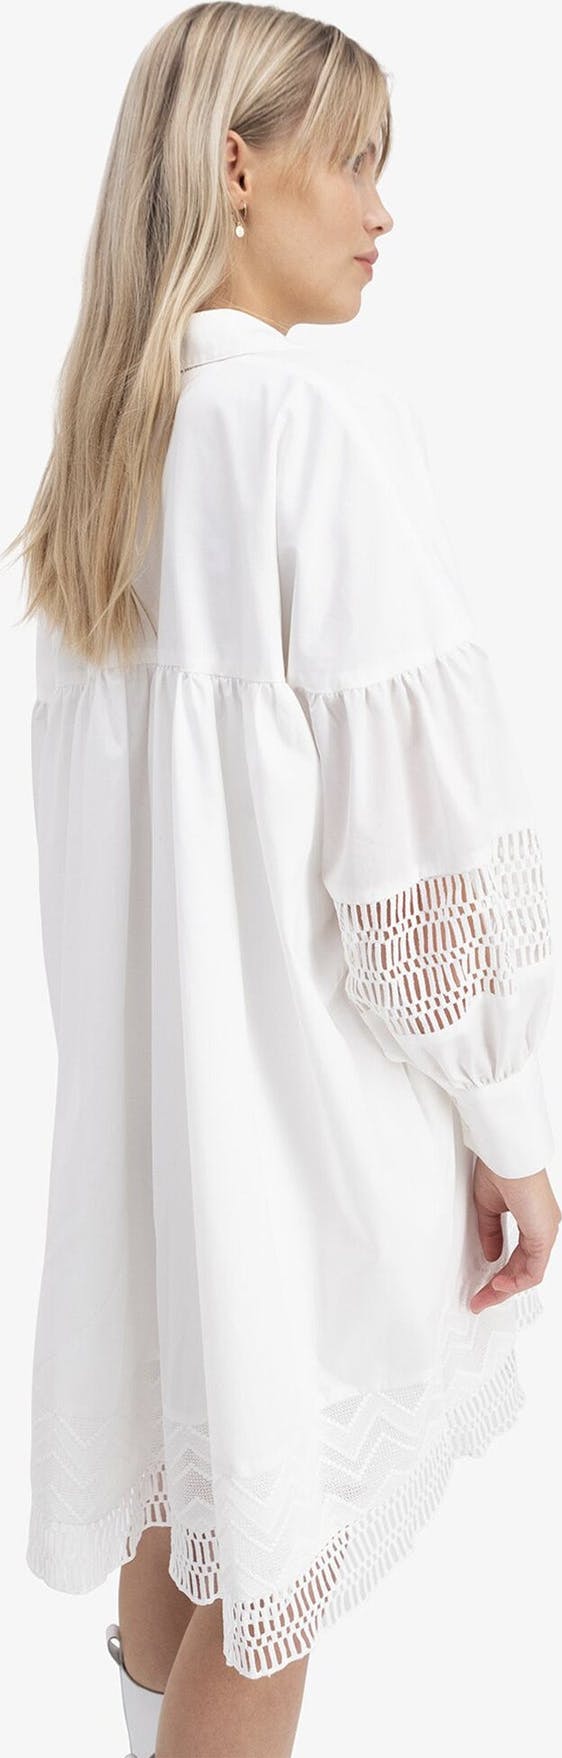 Mesima Shirt Dress - White - Camilla Pihl - Kjoler - VILLOID.no